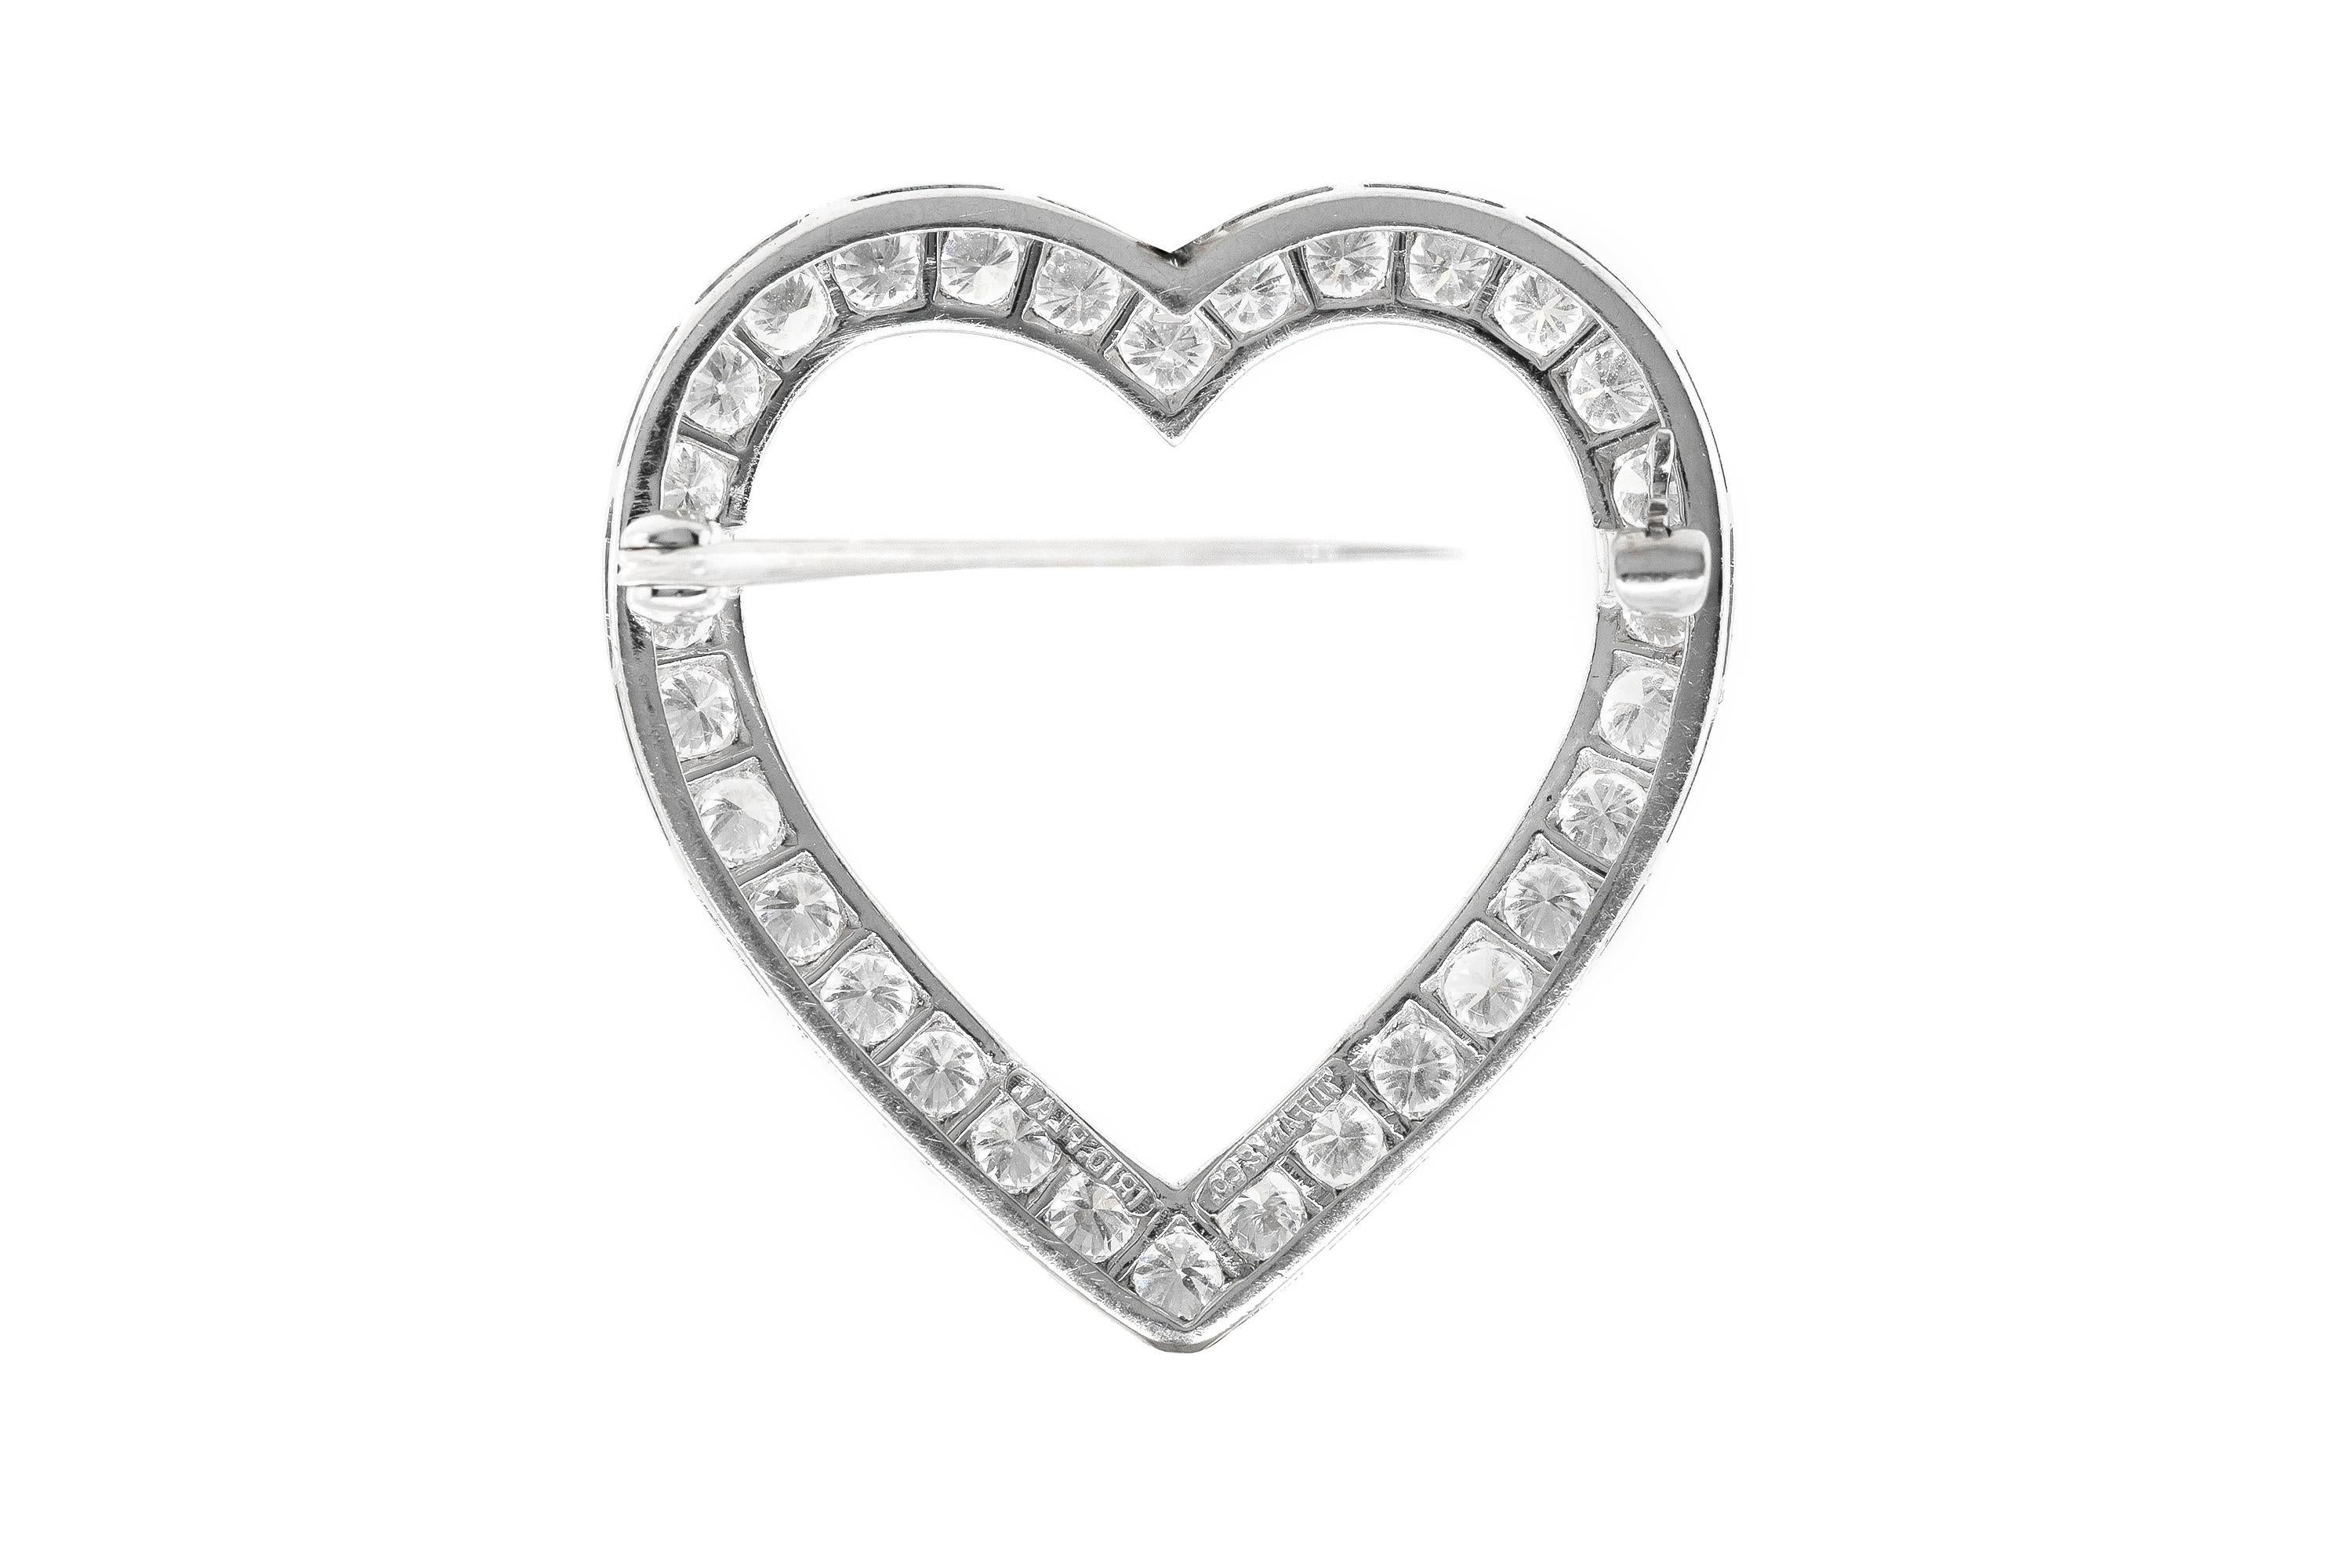 Fein gearbeitet aus Platin mit runden Diamanten im Brillantschliff mit einem Gesamtgewicht von ca. 3,00 Karat.
Signiert von Tiffany & Co.
Abmessungen: 1 ⅜ Zoll lang x 1 ¼ Zoll breit